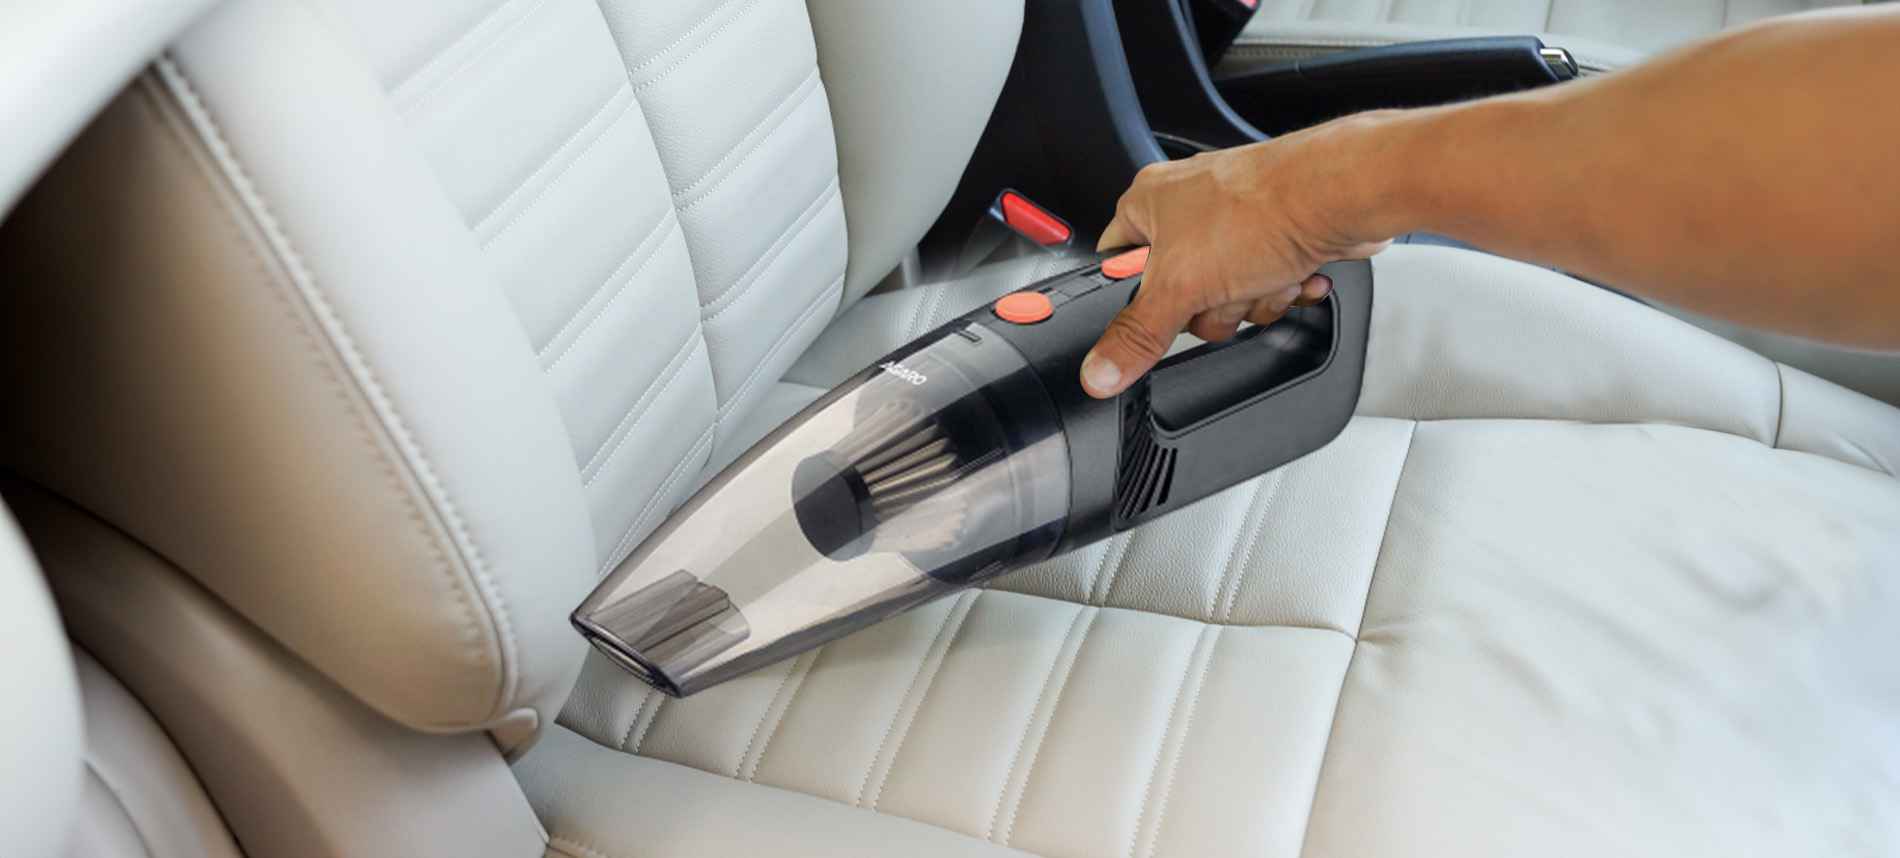 Licargo® Premium Car Interior Cleaner (500 ml) - Cockpit Cleaner